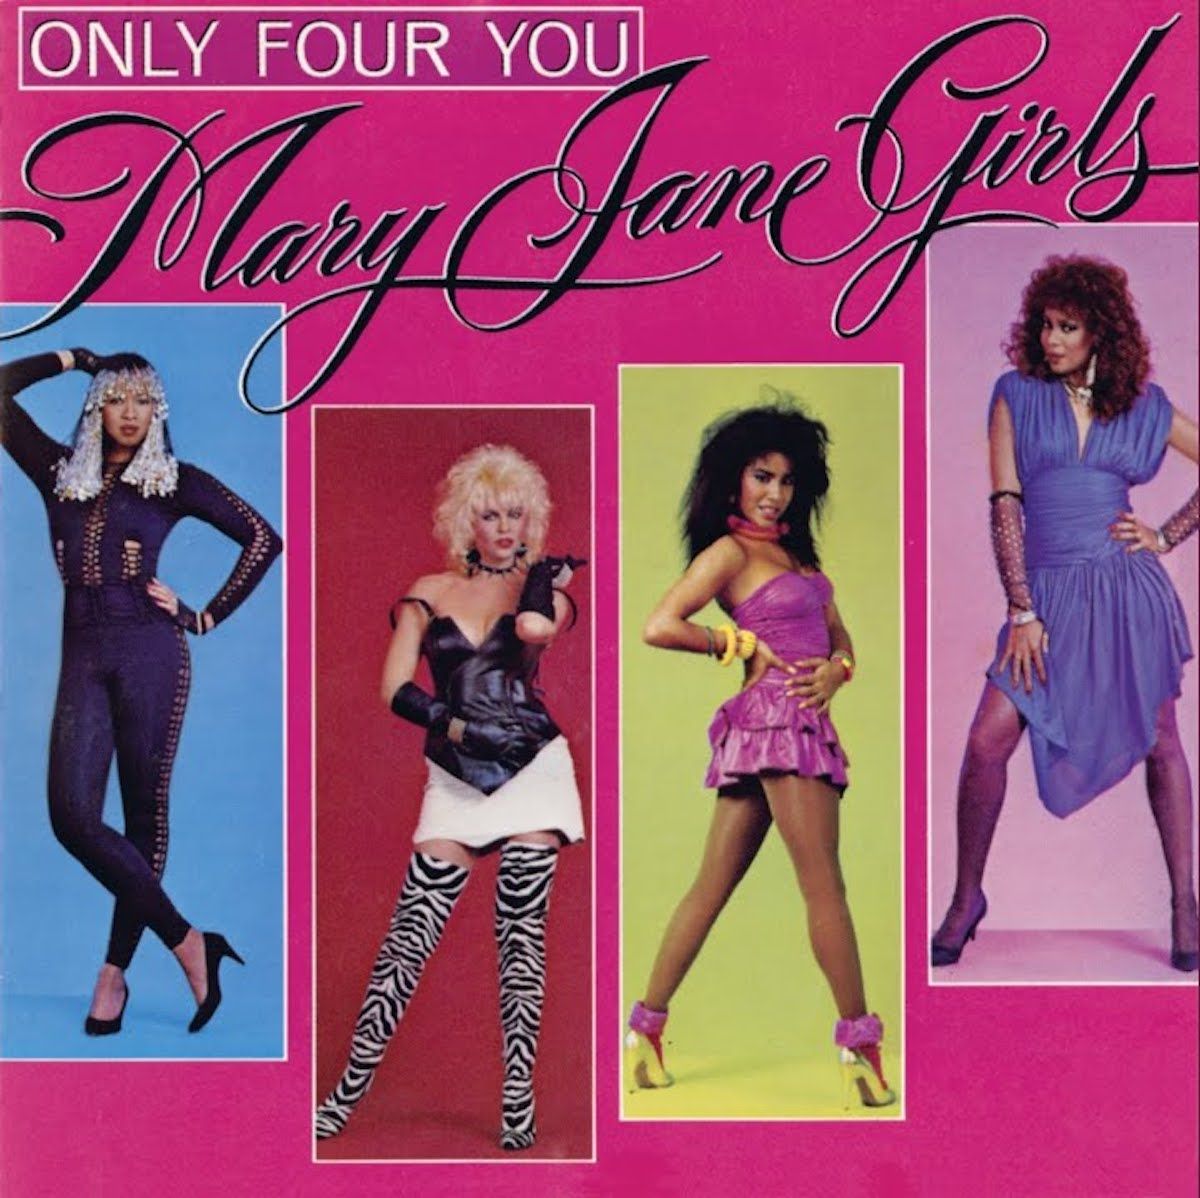 غلاف الألبوم لأربعة أنت فقط من قبل ماري جين جيرلز